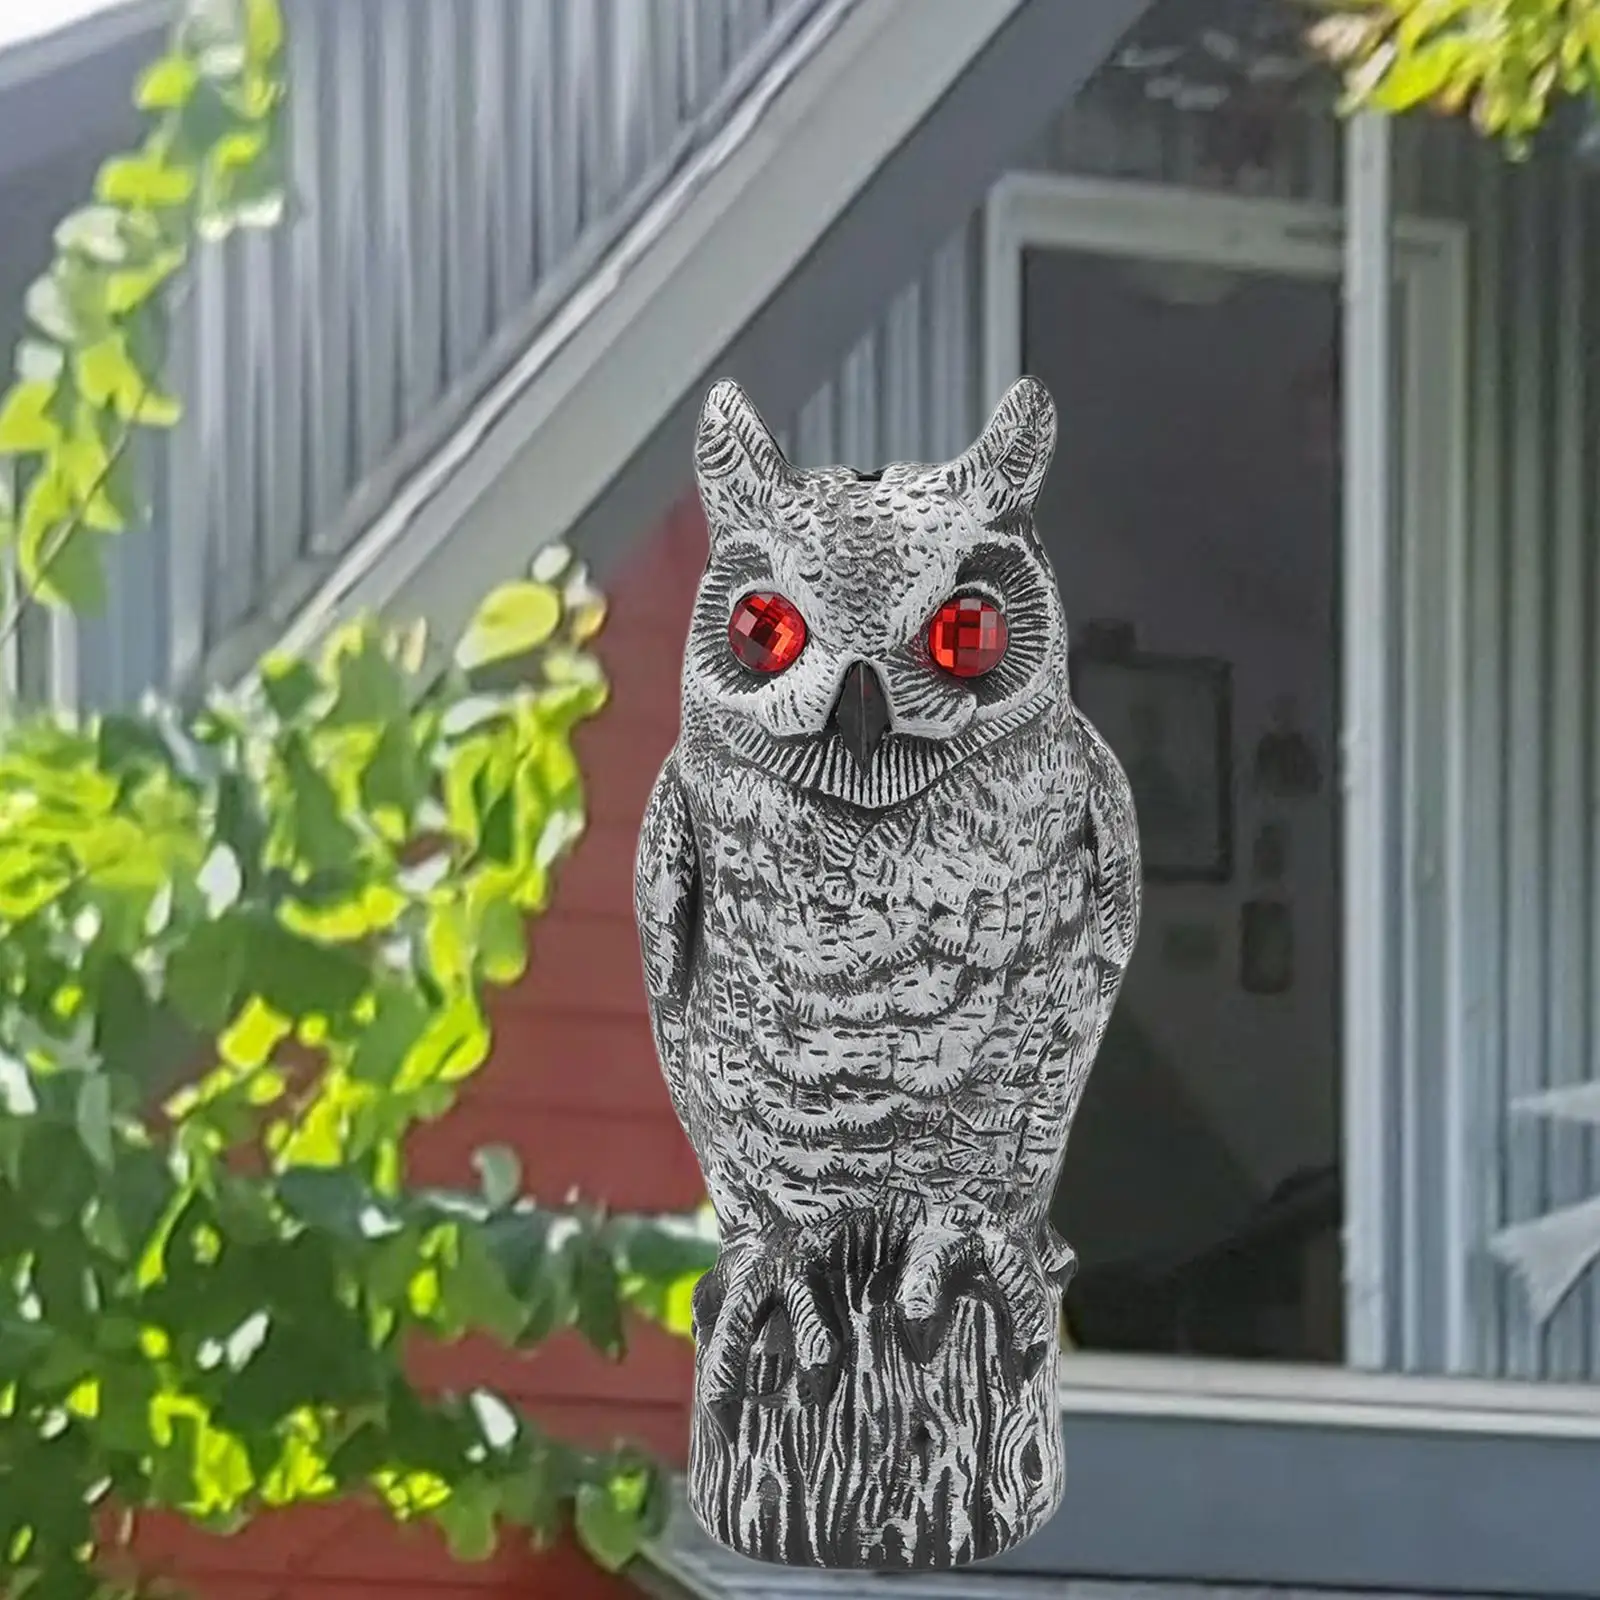 Fake Owl Bird Deterrent Decoygarden Scarecrow Resin Red Eyes Scare Statue Squirrel Deterrents for Lawn Home Garden